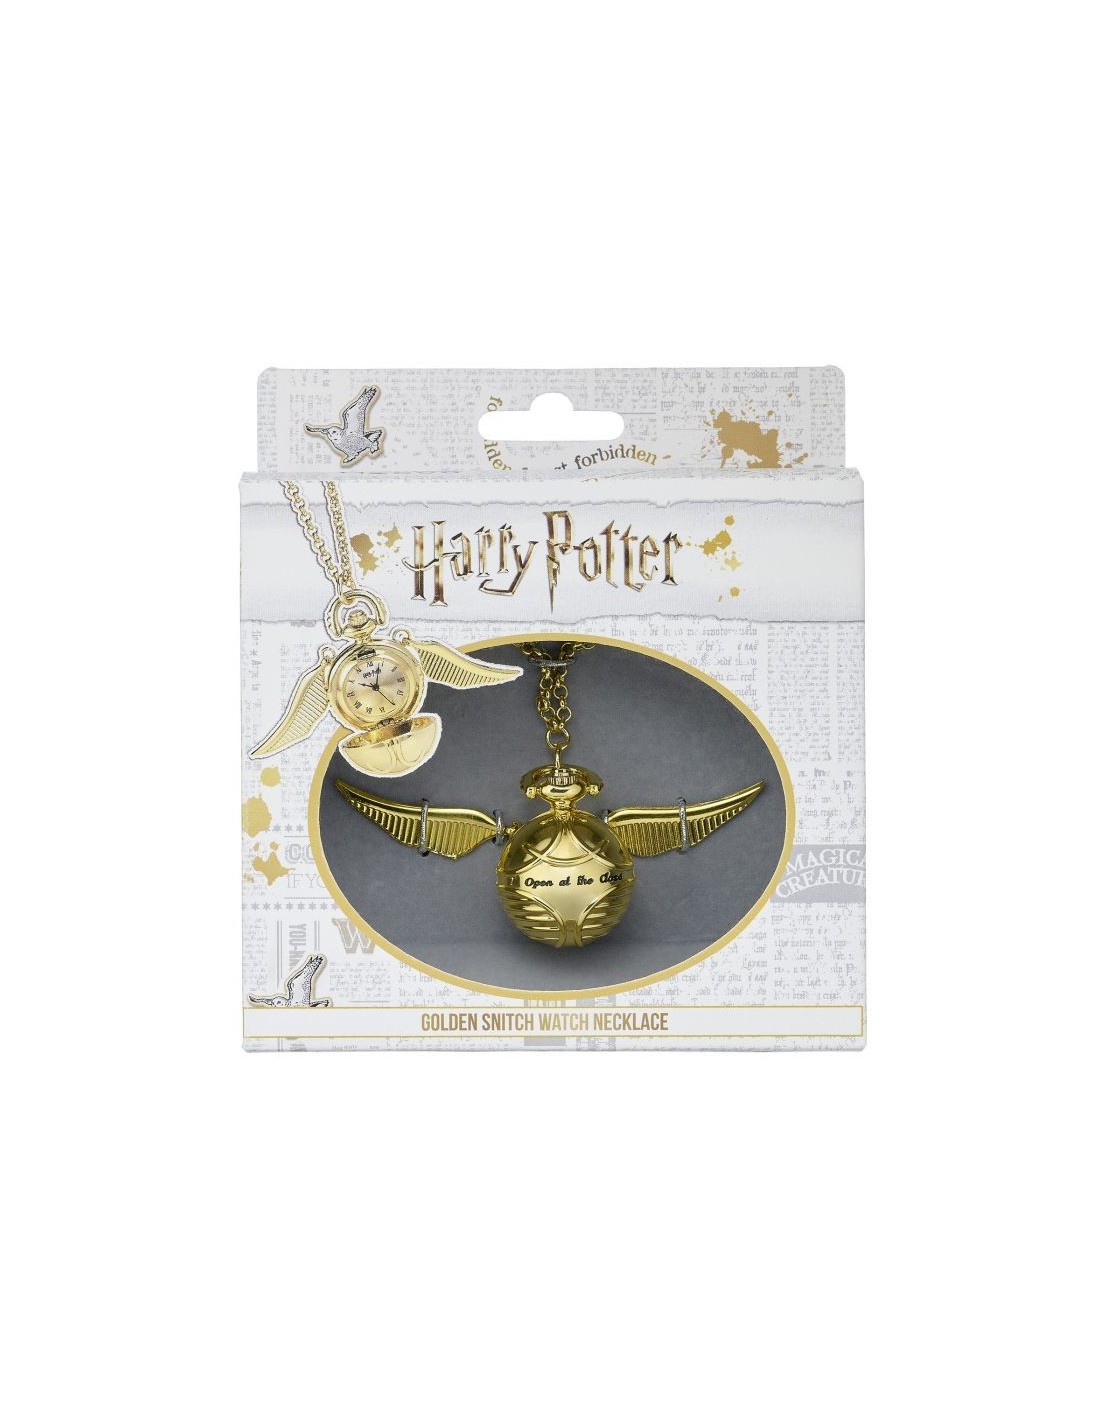 Orologio Boccino d'Oro Harry Potter + collana e Box originale the carat shop